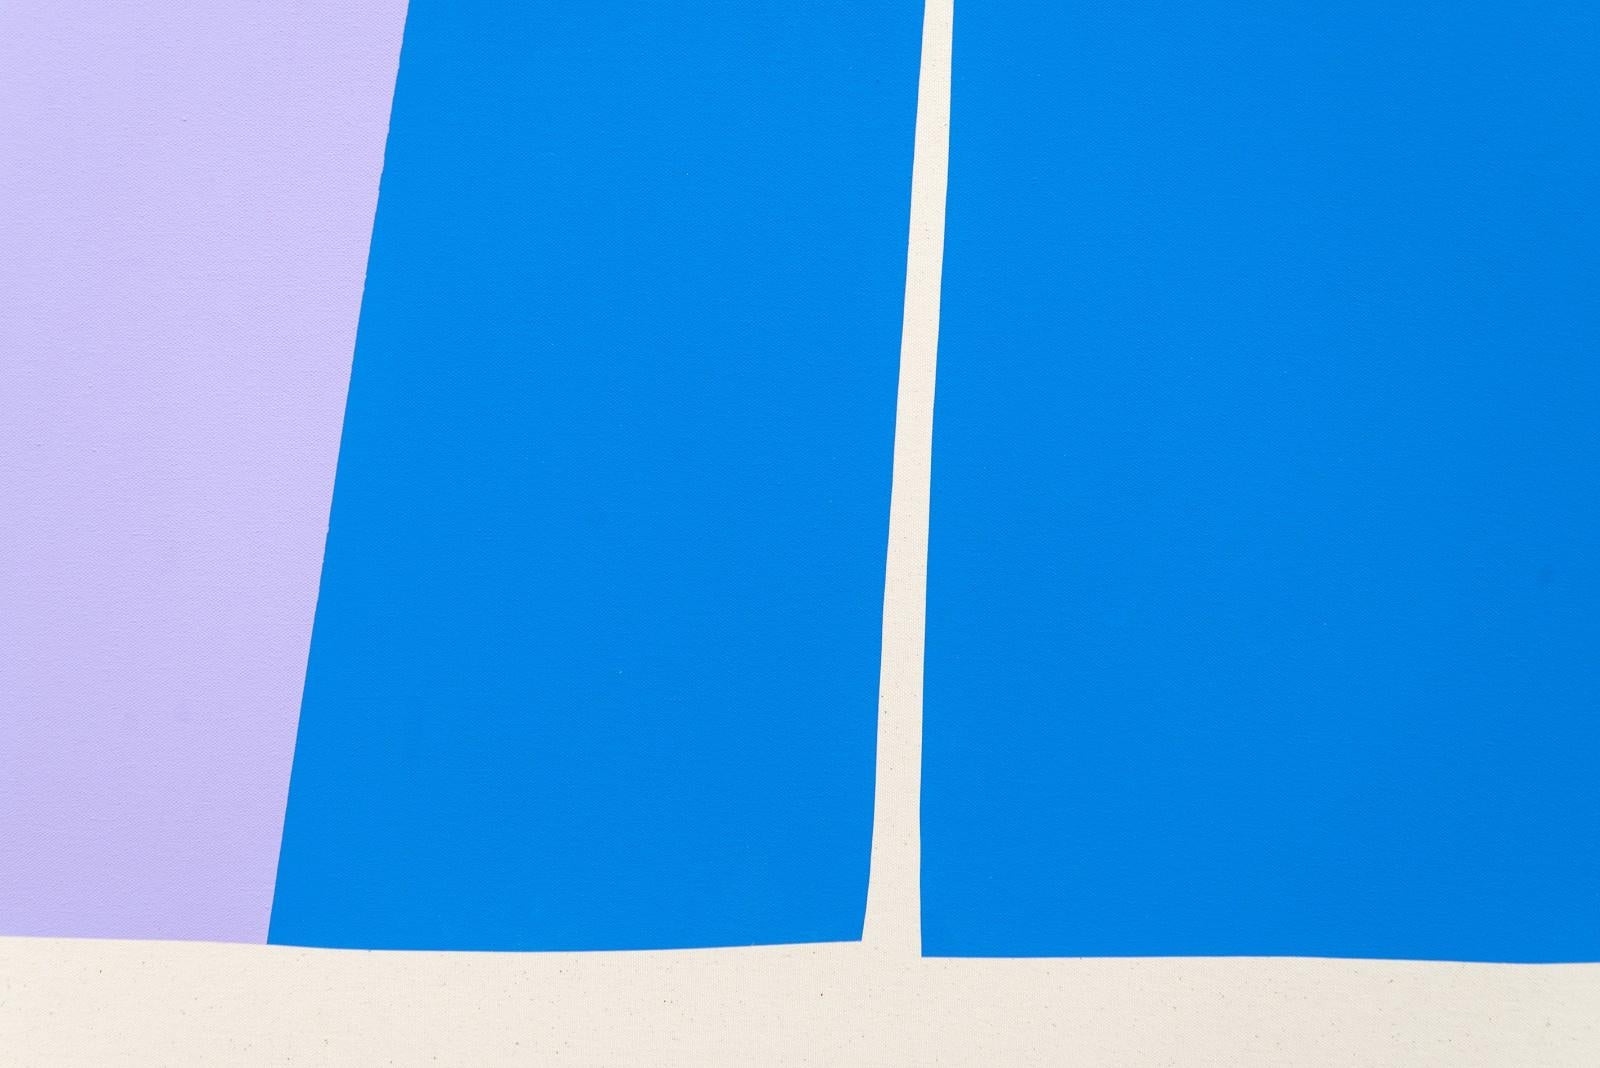 Starke, einfache geometrische Formen in leuchtenden Farben - Königsblau, Rot, Marineblau und Lavendel - schaffen eine frische und lustige Szene in diesem neuen Werk von Aron Hill aus Calgary. Dieses Bild gehört zu einer Reihe von minimalistischen